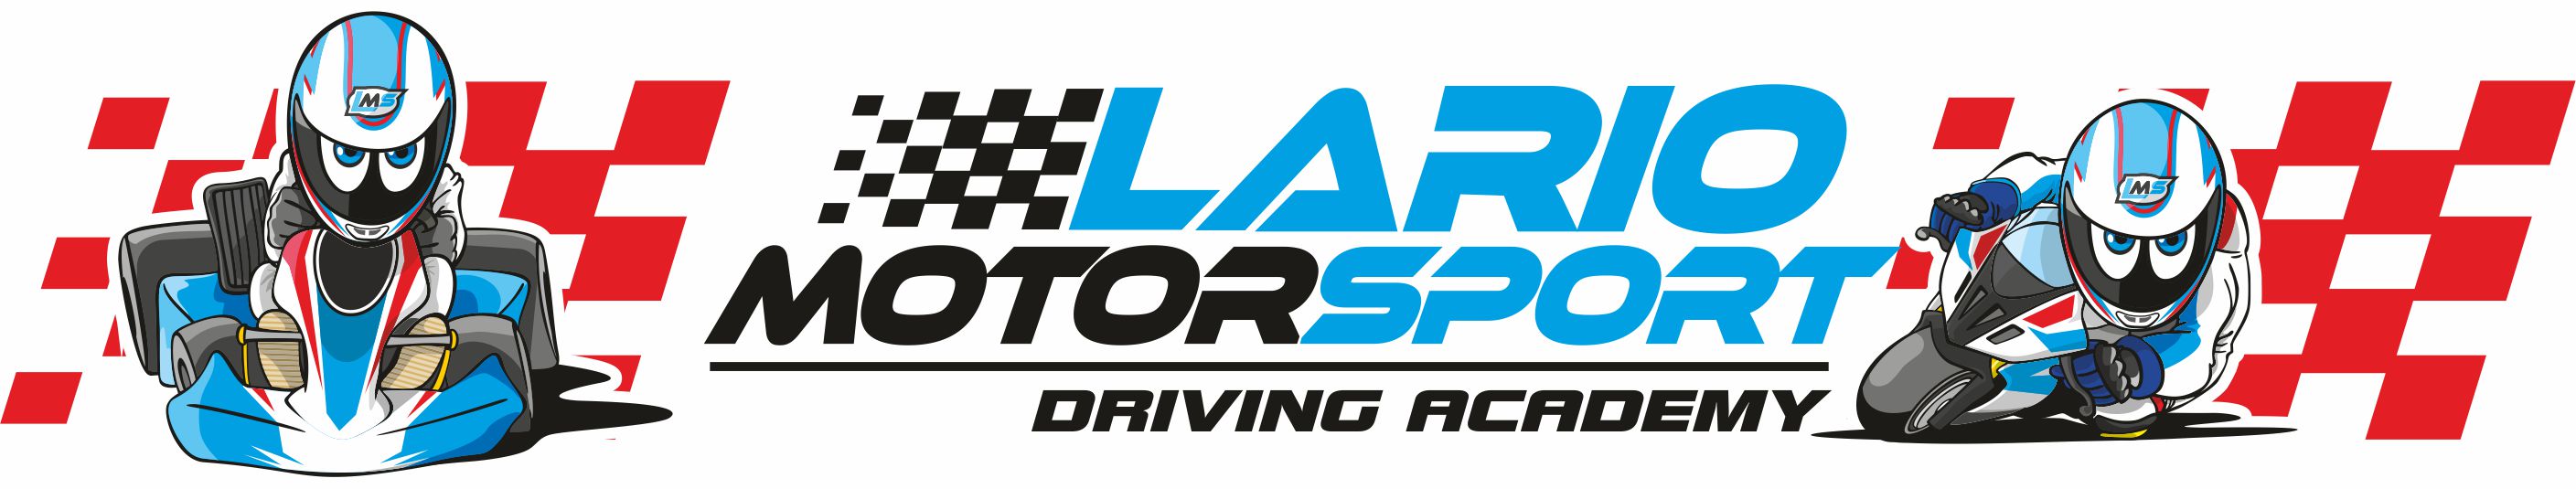 Lario Motor Sport